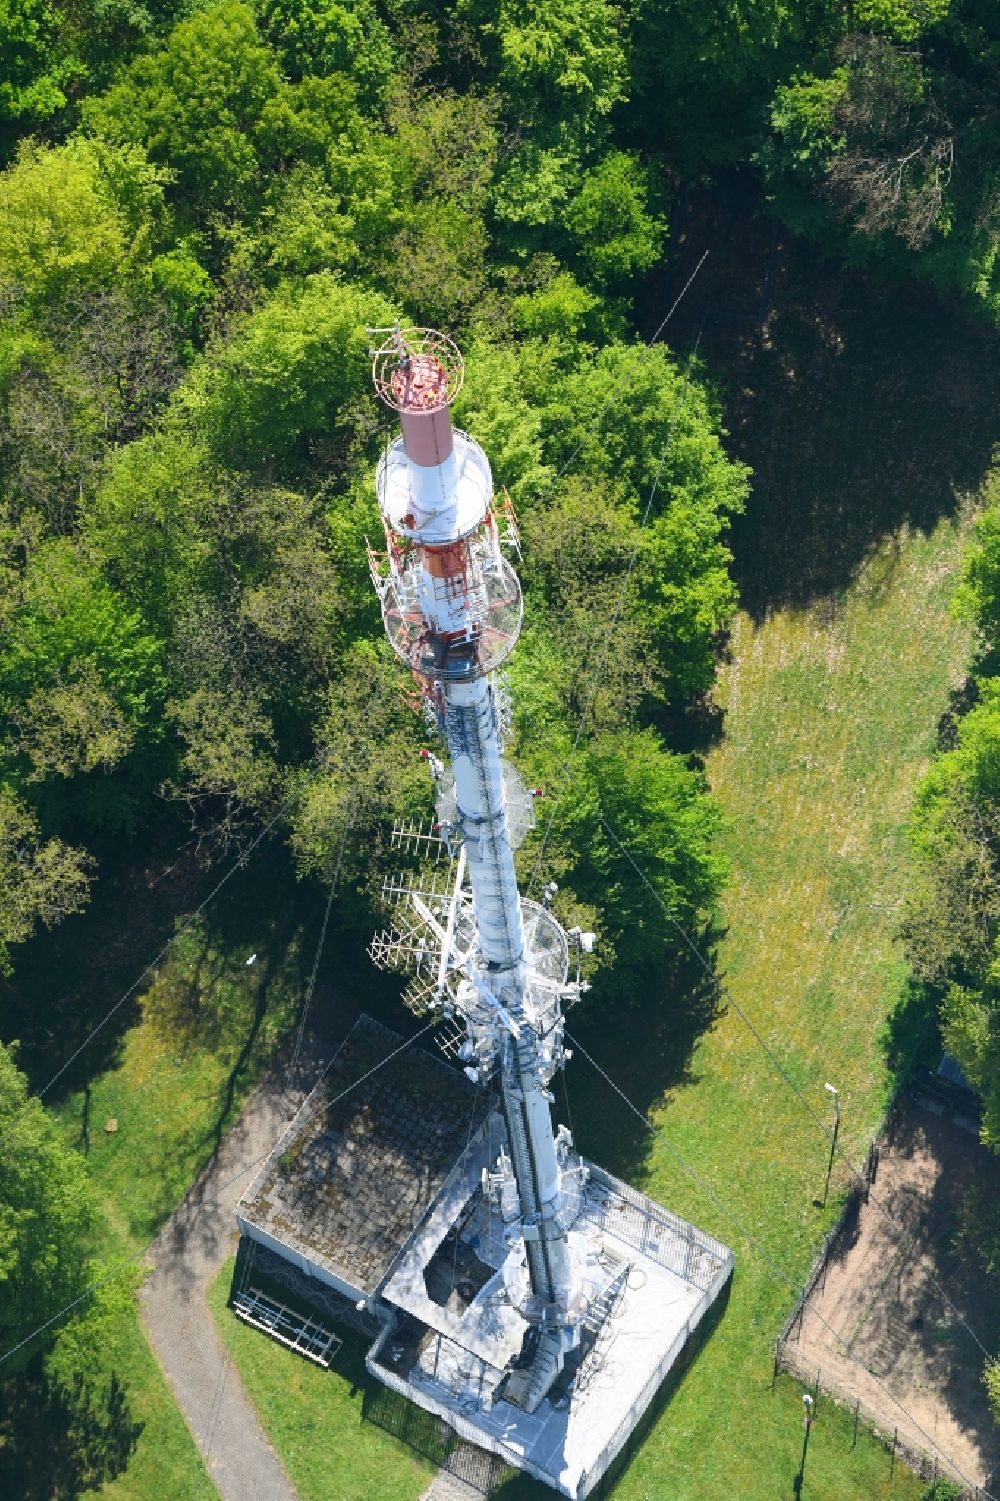 Kleve aus der Vogelperspektive: Stahlmast- Funkturm und Sendeanlage als Grundnetzsender des WDR in Kleve im Bundesland Nordrhein-Westfalen, Deutschland